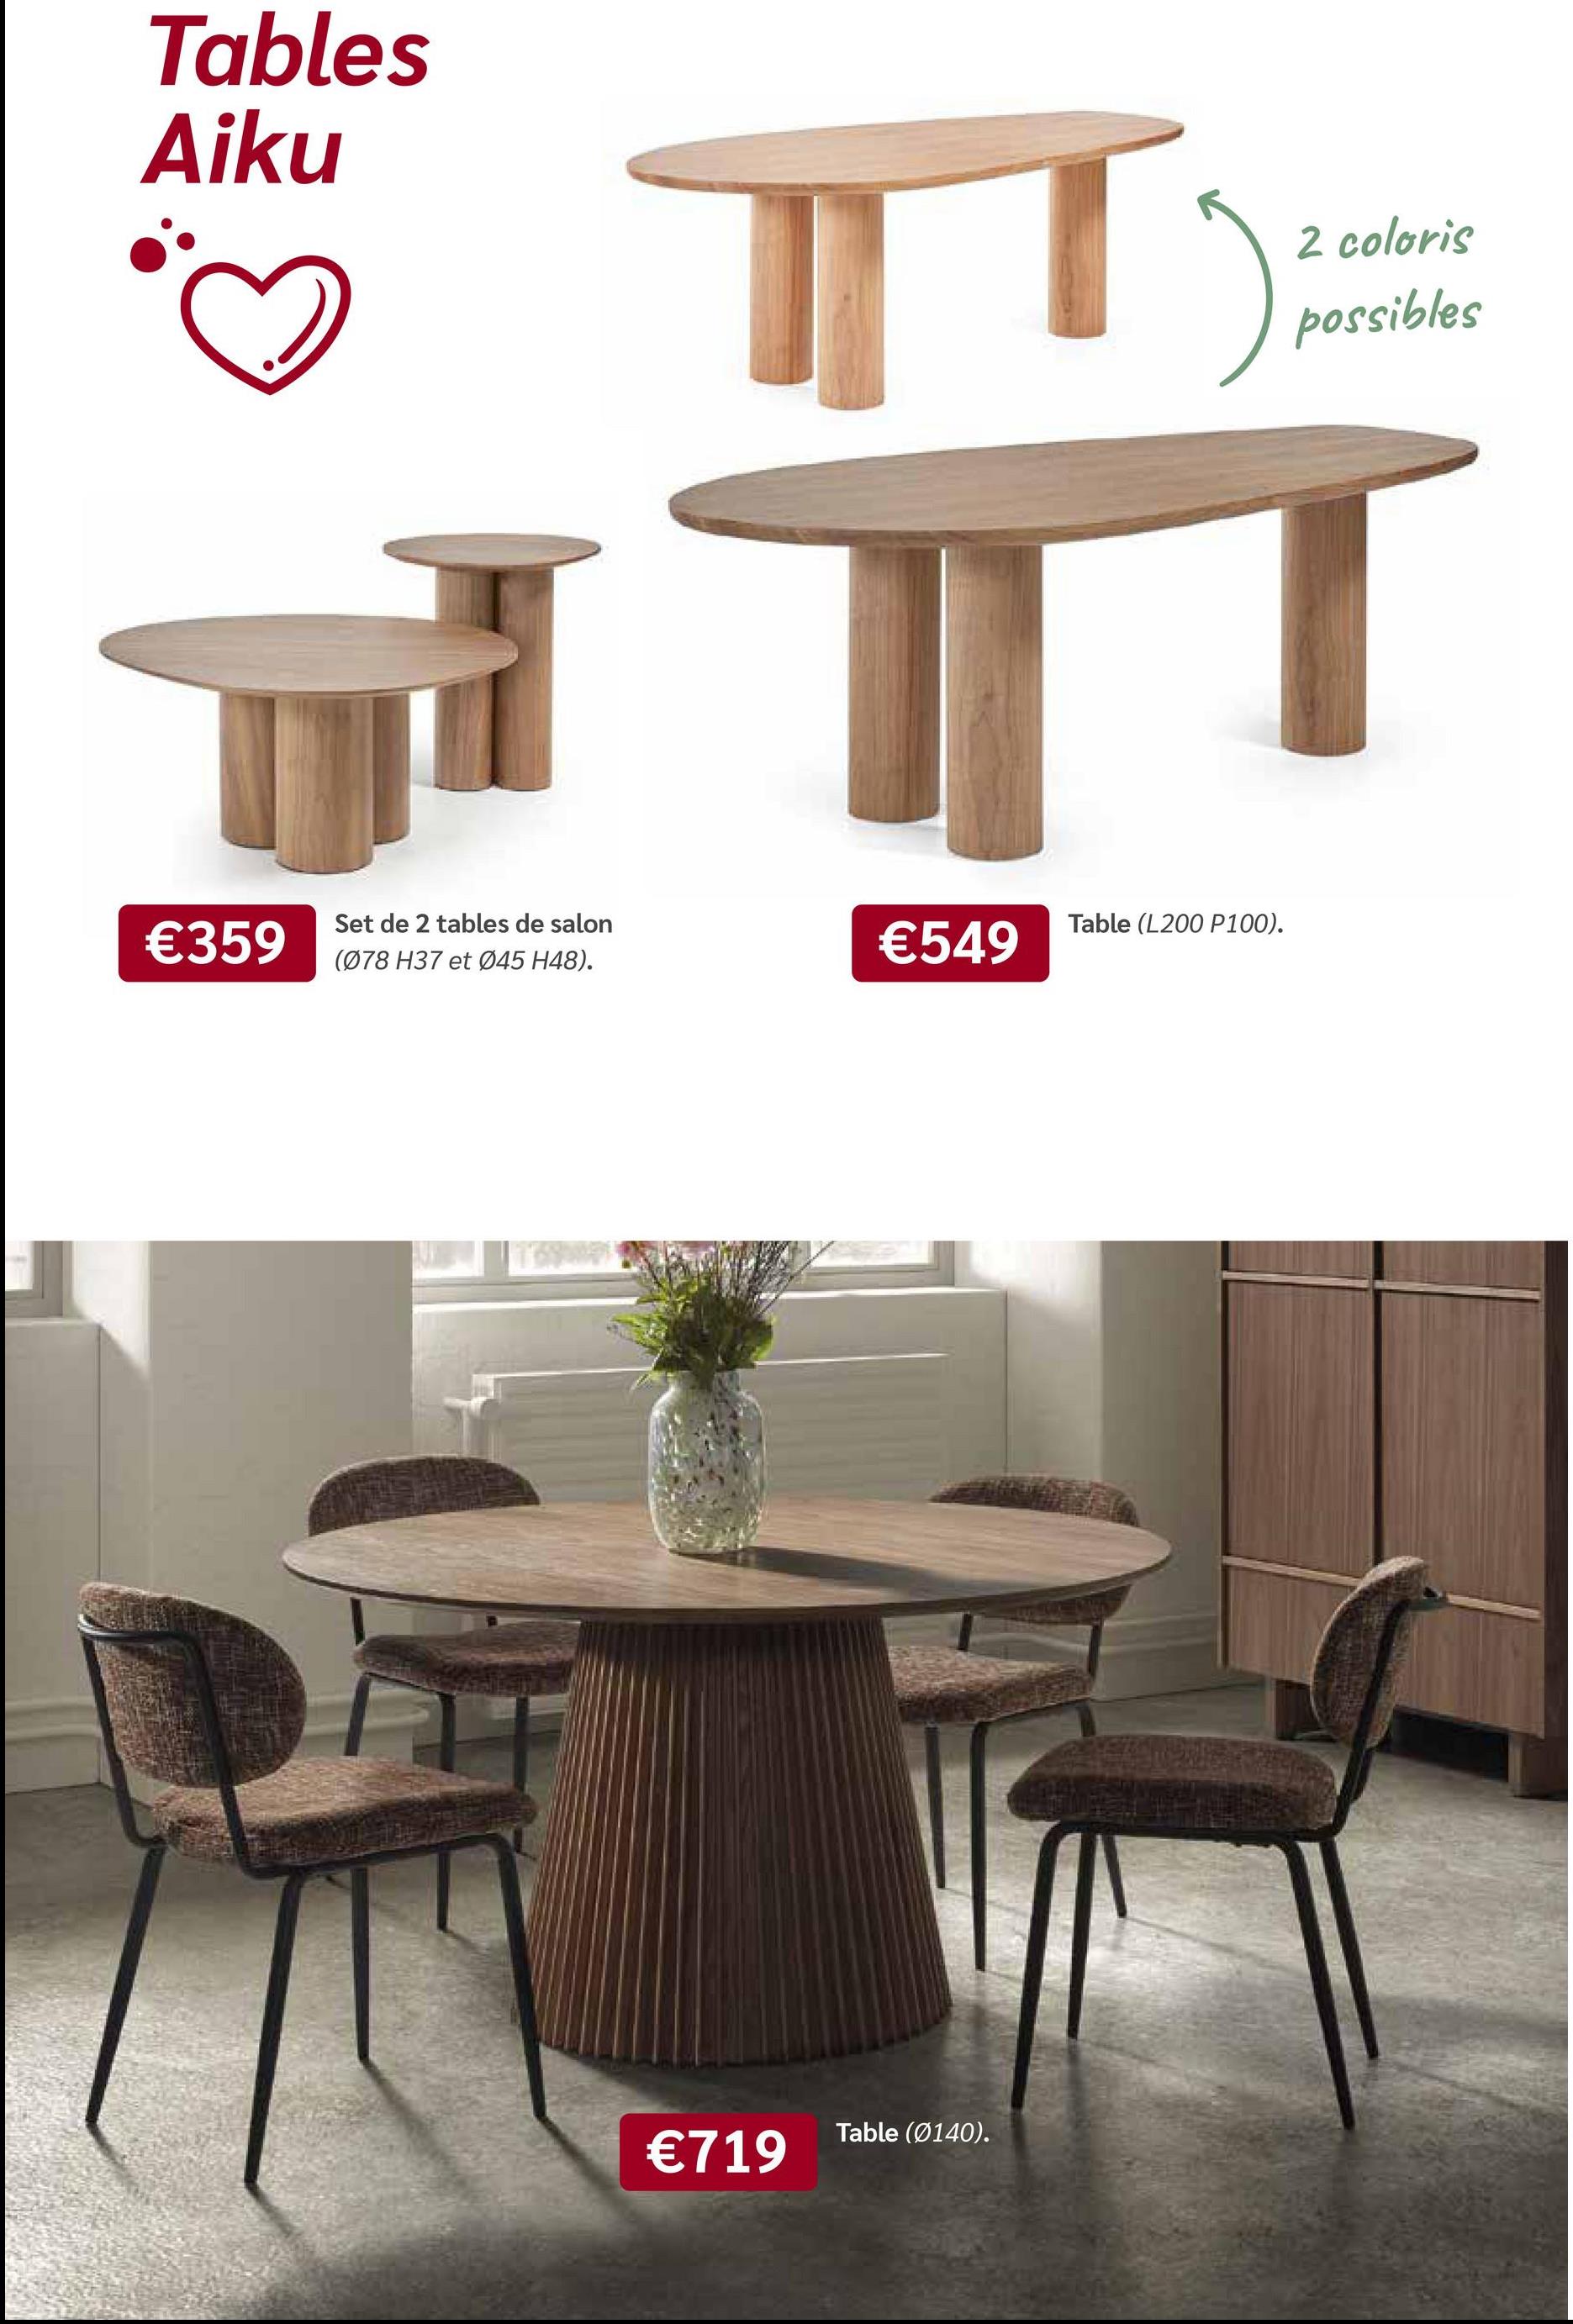 Tables
Aiku
Set de 2 tables de salon
Table (L200 P100).
€359
€549
(078 H37 et 045 H48).
€719
Table (0140).
2 coloris
possibles